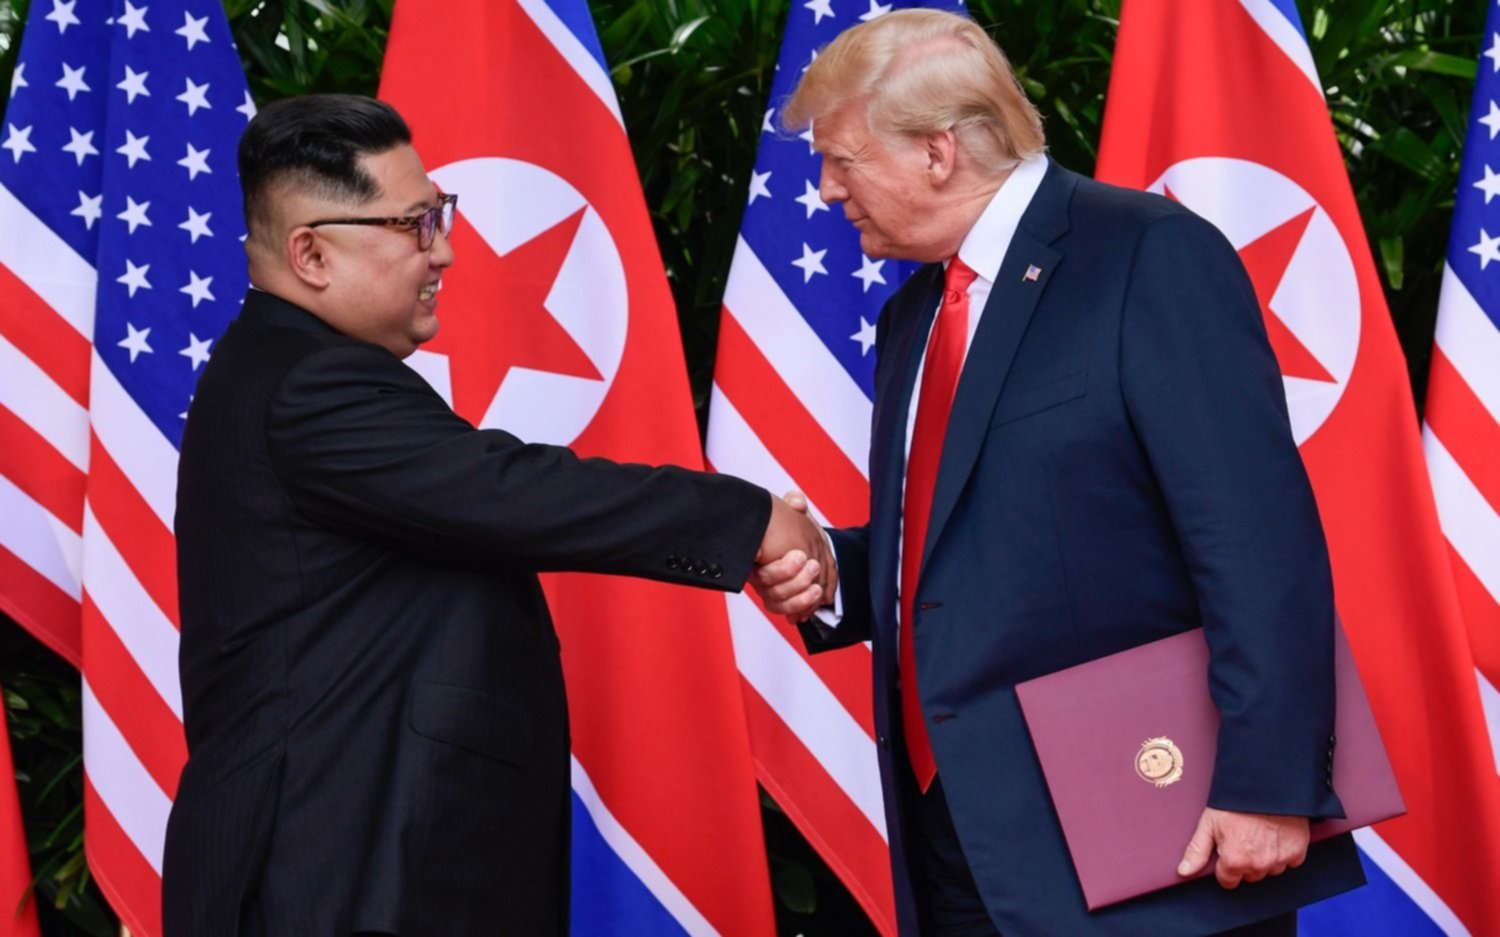 Trump anunció el fin de "los juegos de guerra" con Corea del Norte, aunque mantendrá las sanciones